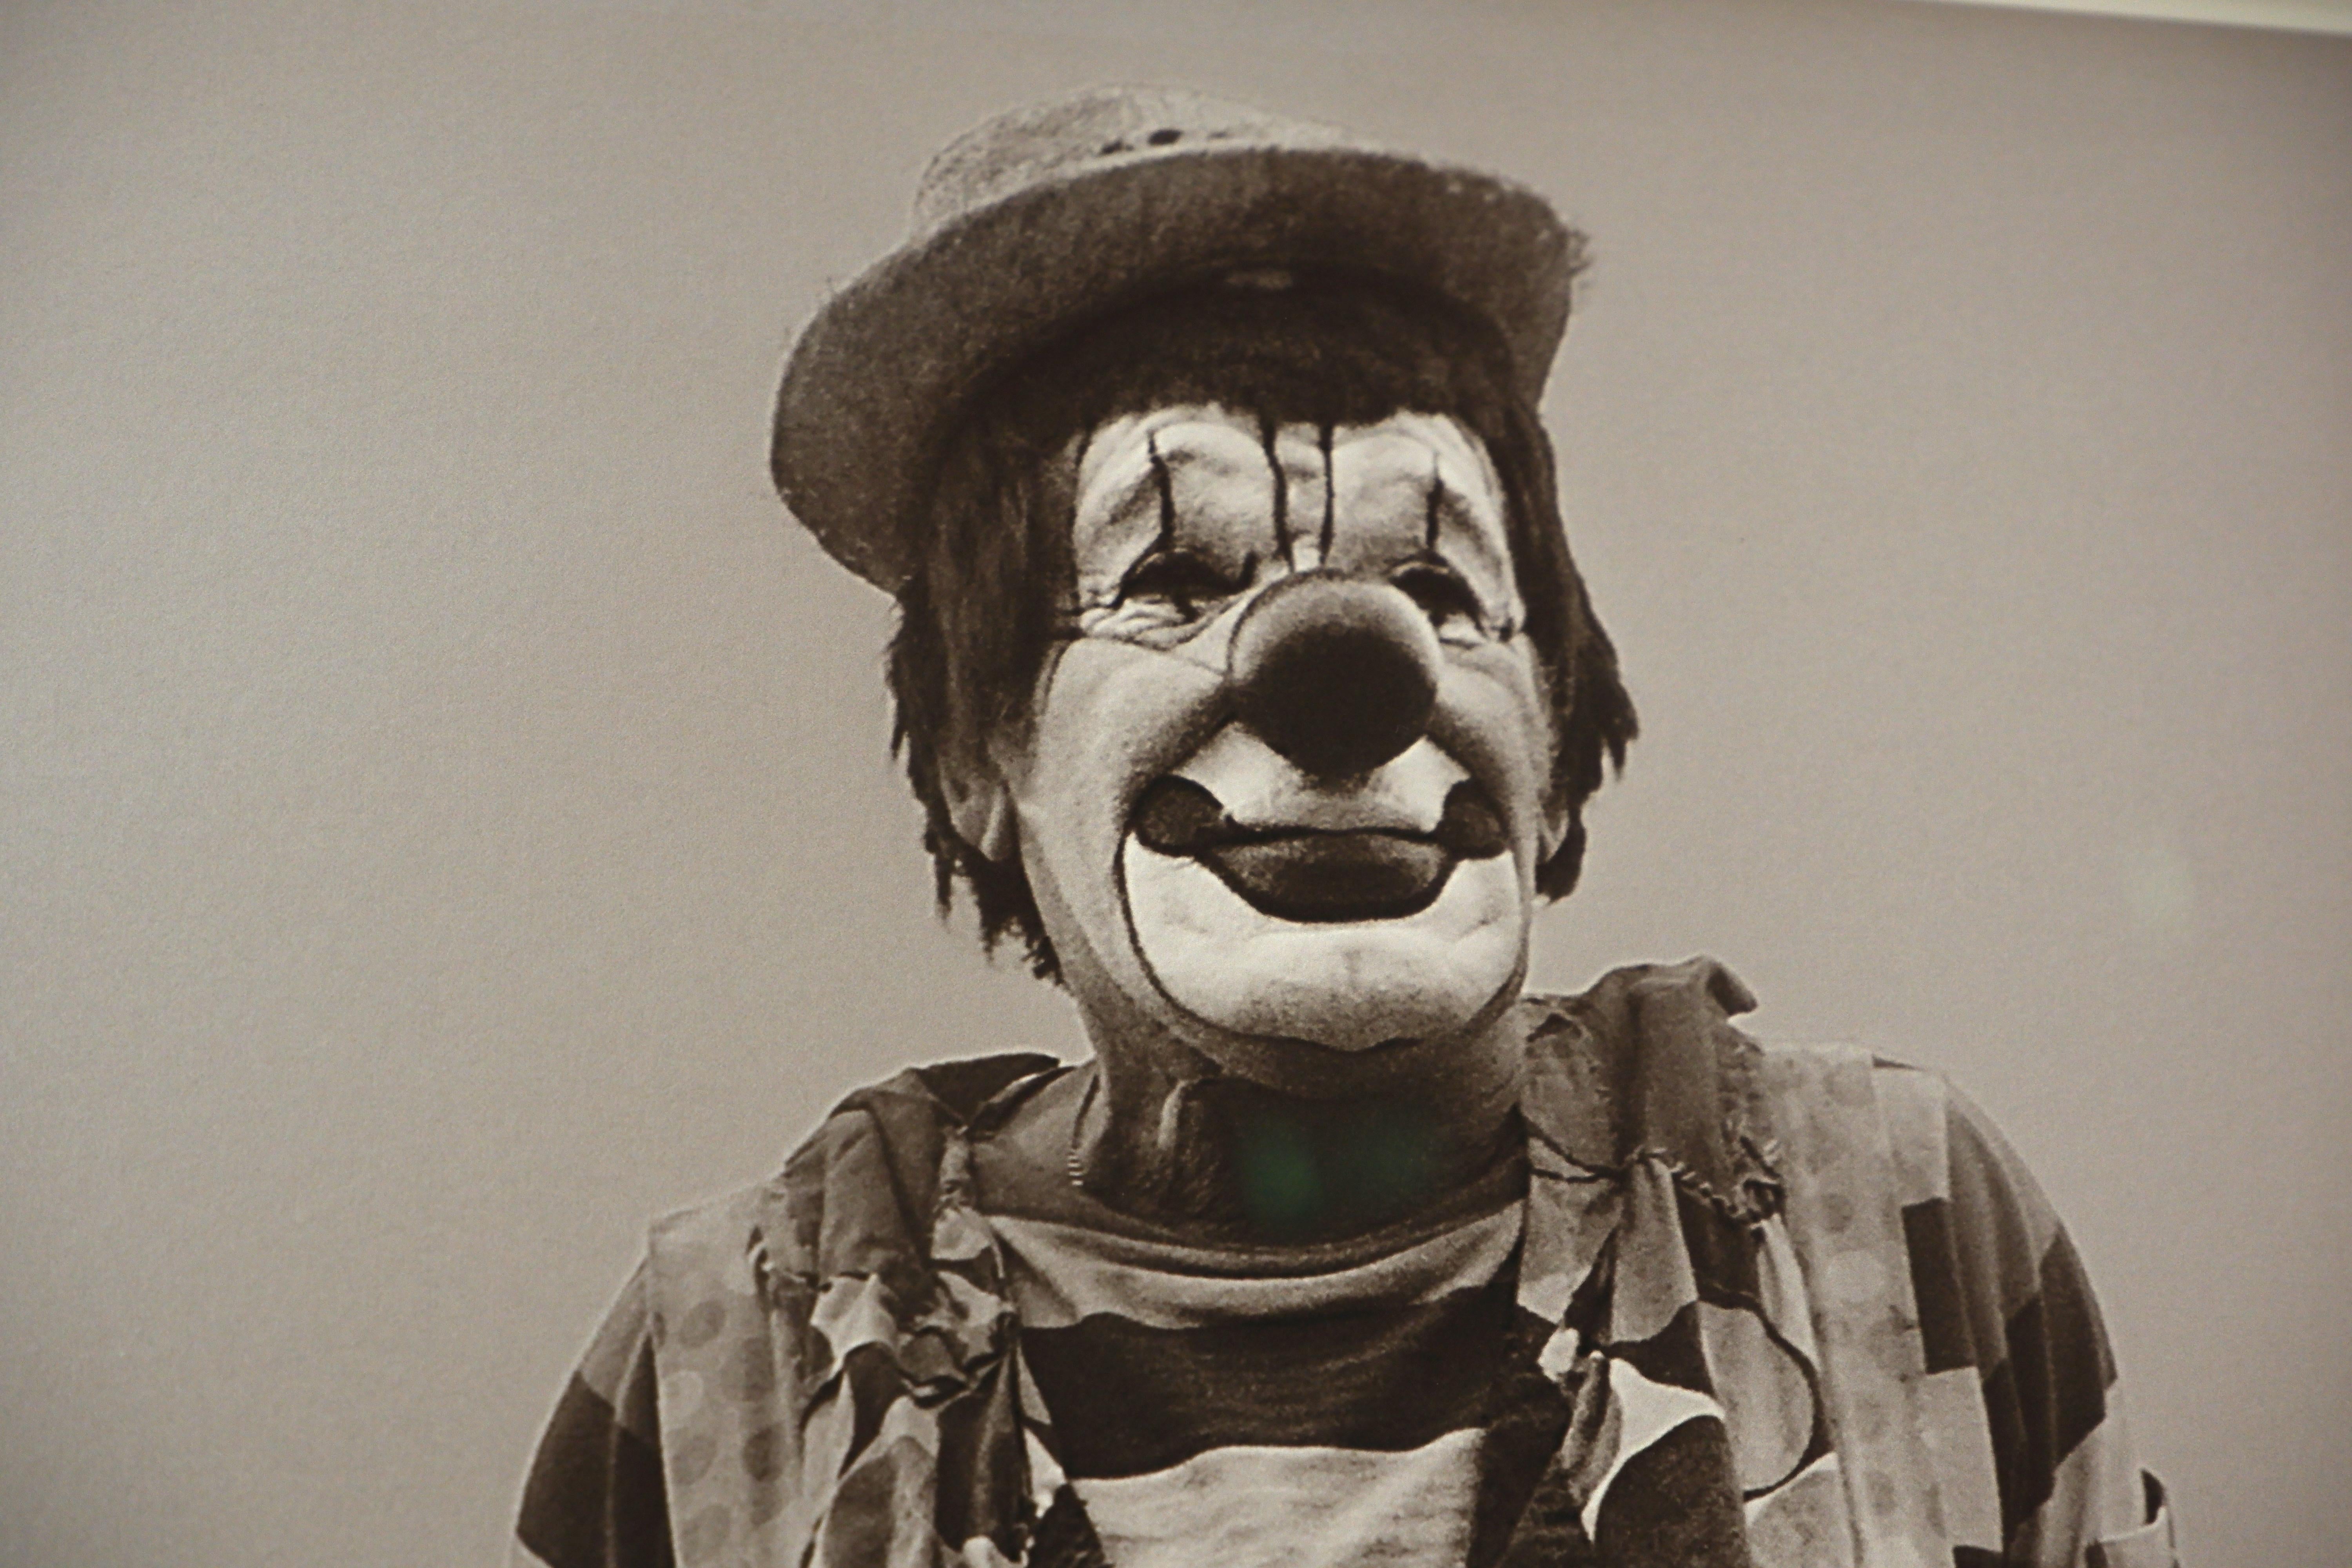 Four Clowns  - Contemporary Photograph by Paul Tillinghast 